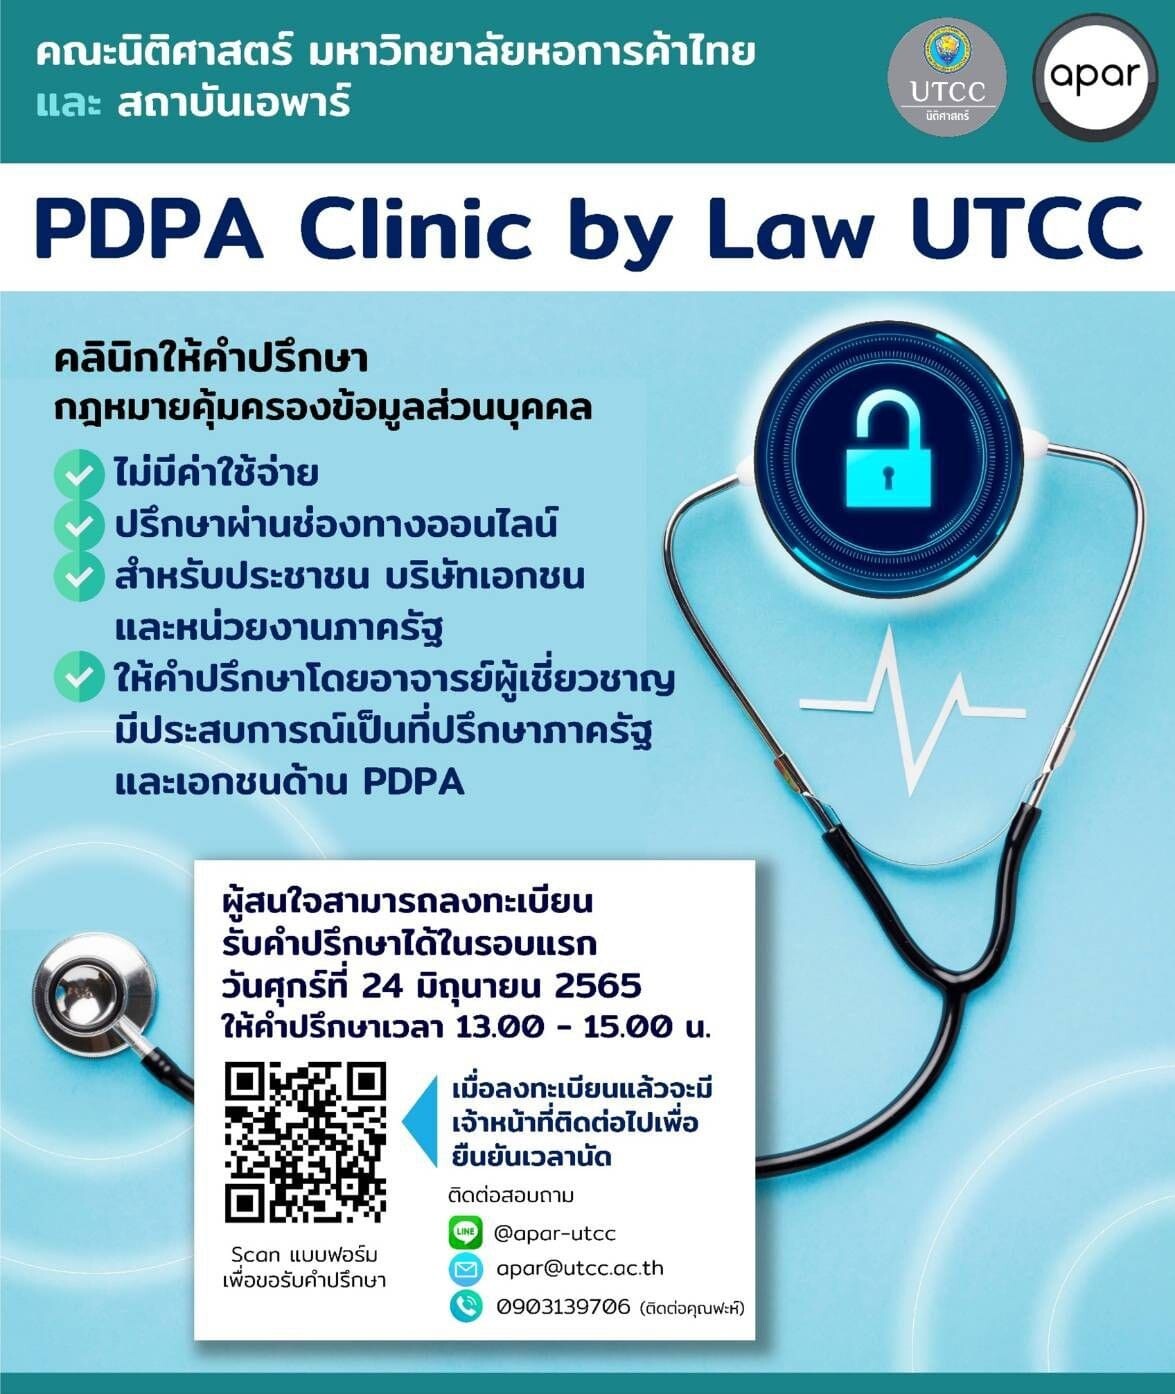 ม.หอการค้าไทย ยืนยันพร้อมปฏิบัติตาม พรบ.ข้อมูลใหม่ PDPA พร้อมตั้งคลีนิกให้คำปรึกษา